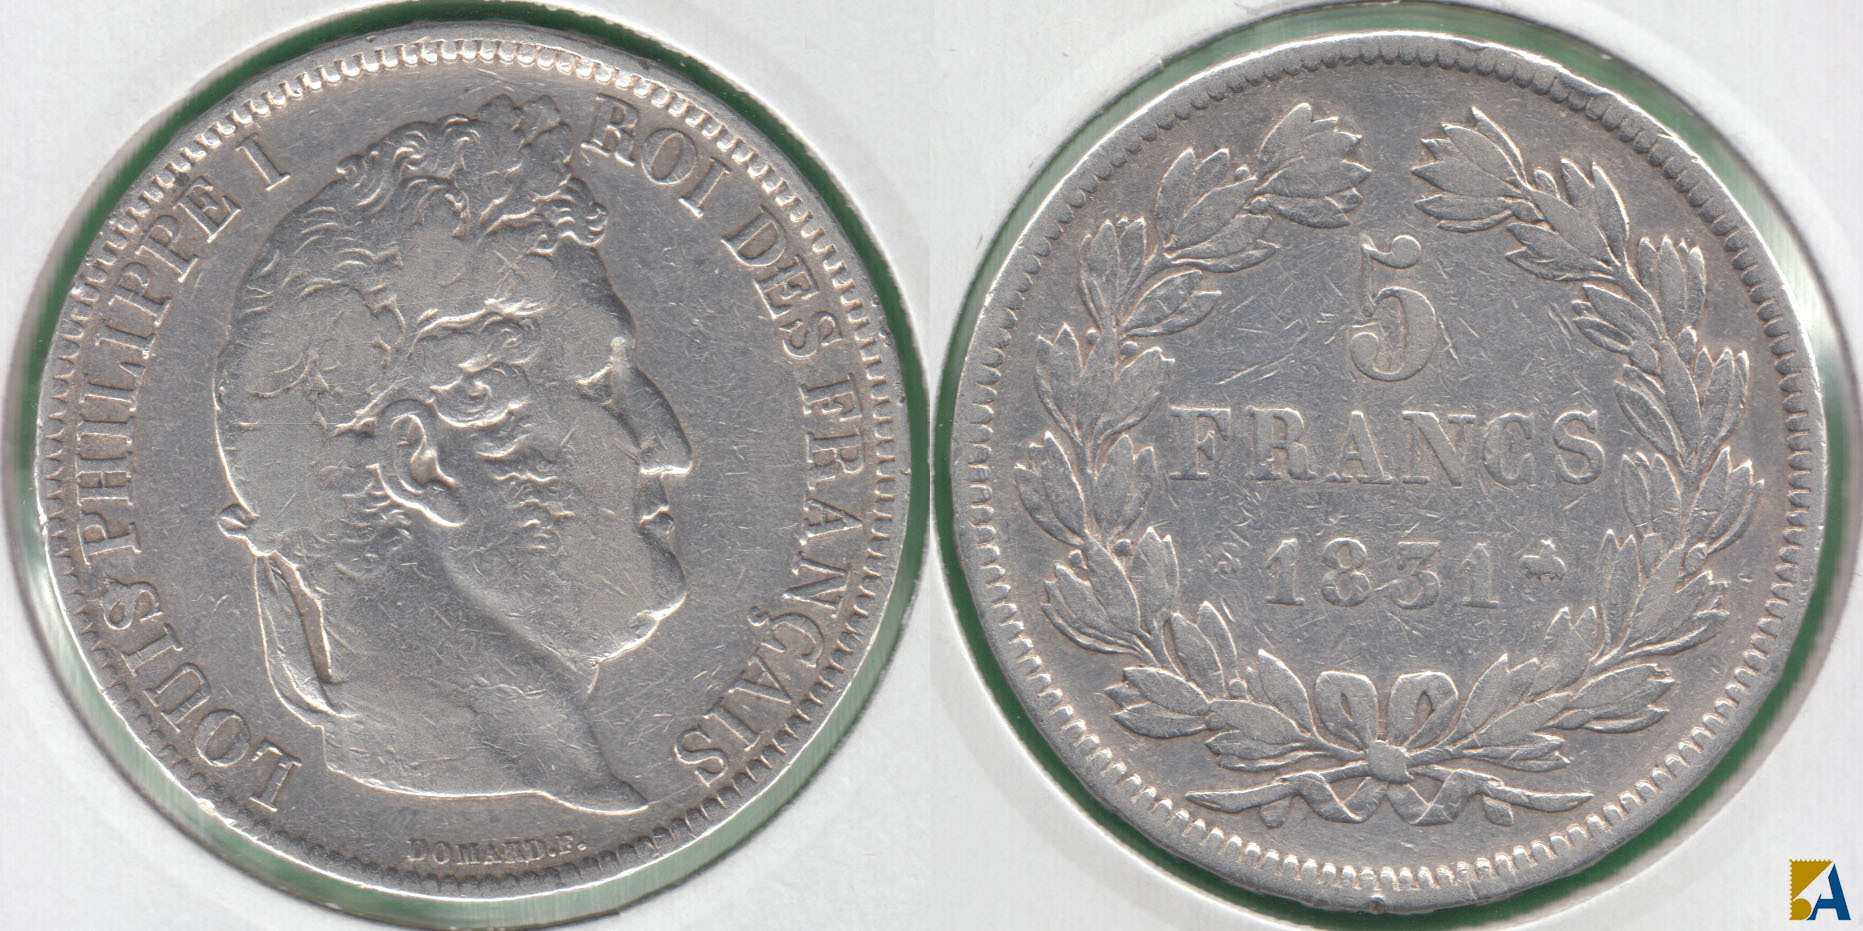 FRANCIA - FRANCE. 5 FRANCOS (FRANCS) DE 1831 B. PLATA 0.900. (2)